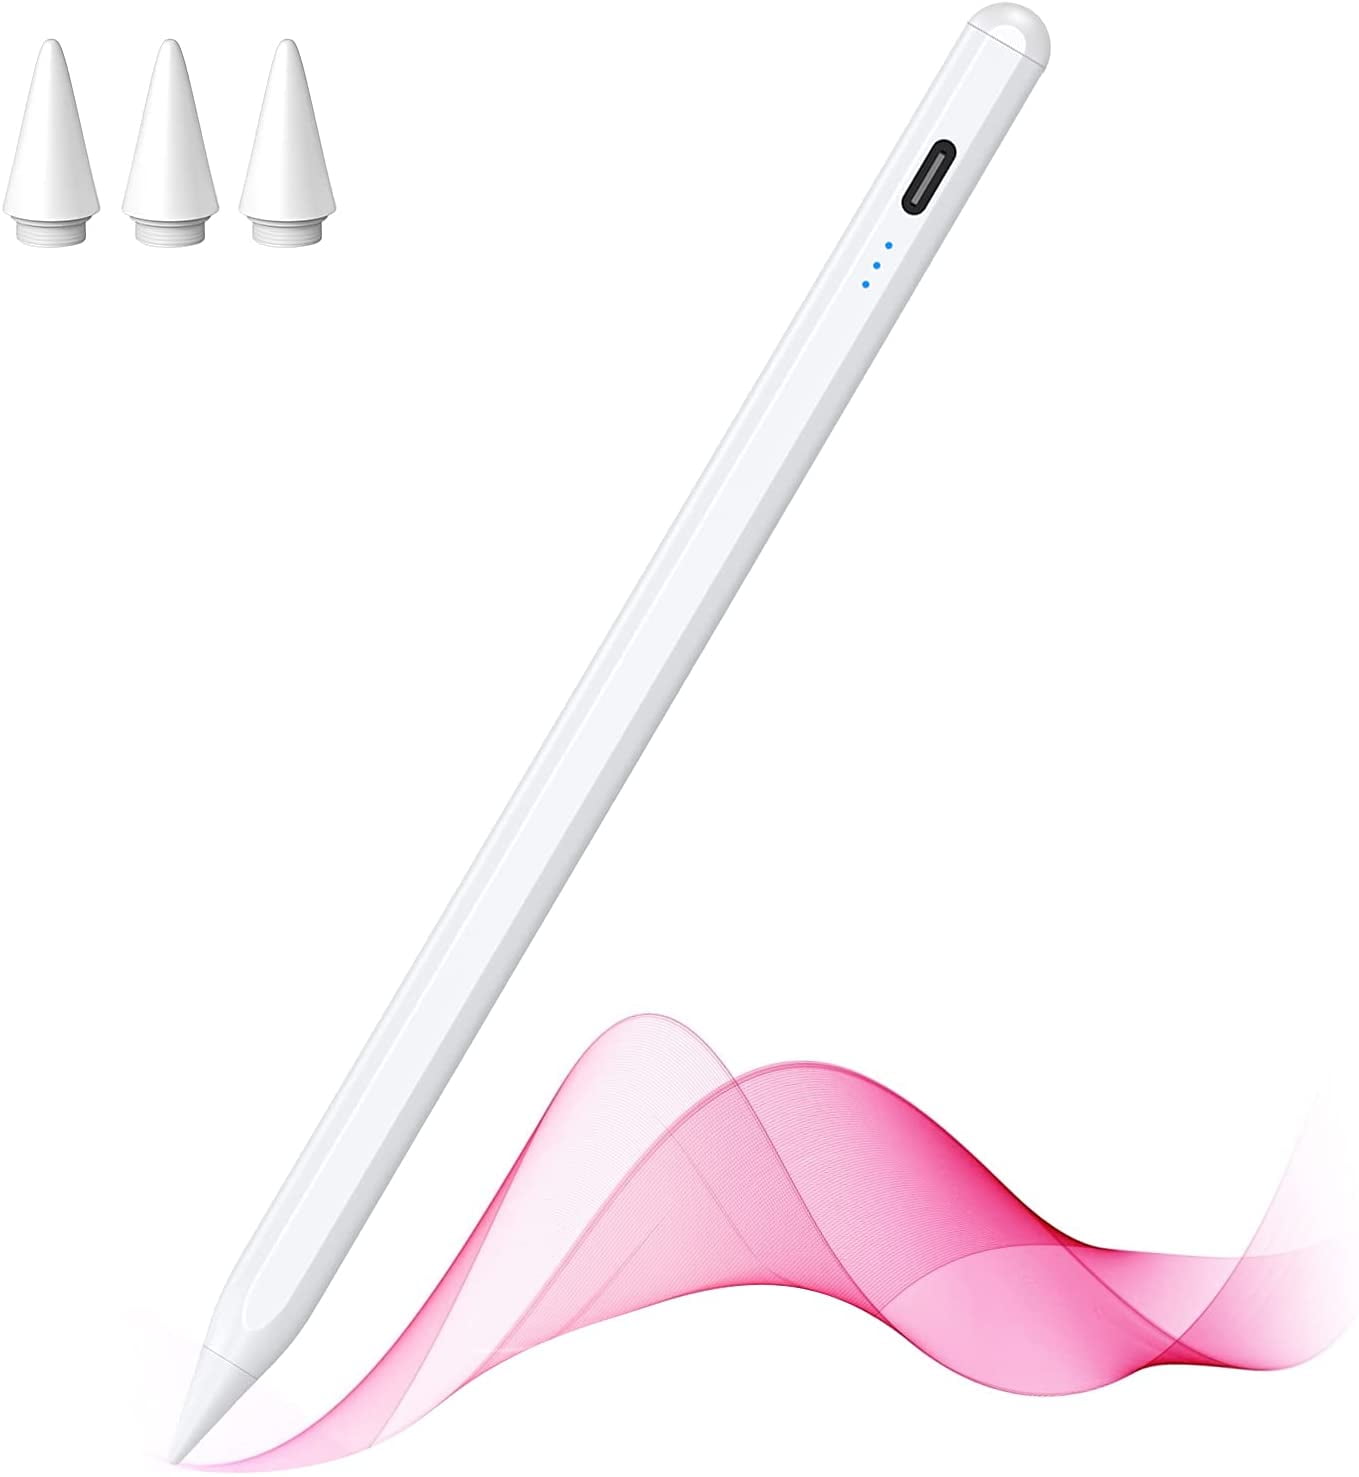 Sunpolin Stylus Pen for Apple iPad, Palm Rejection & Tilt Active